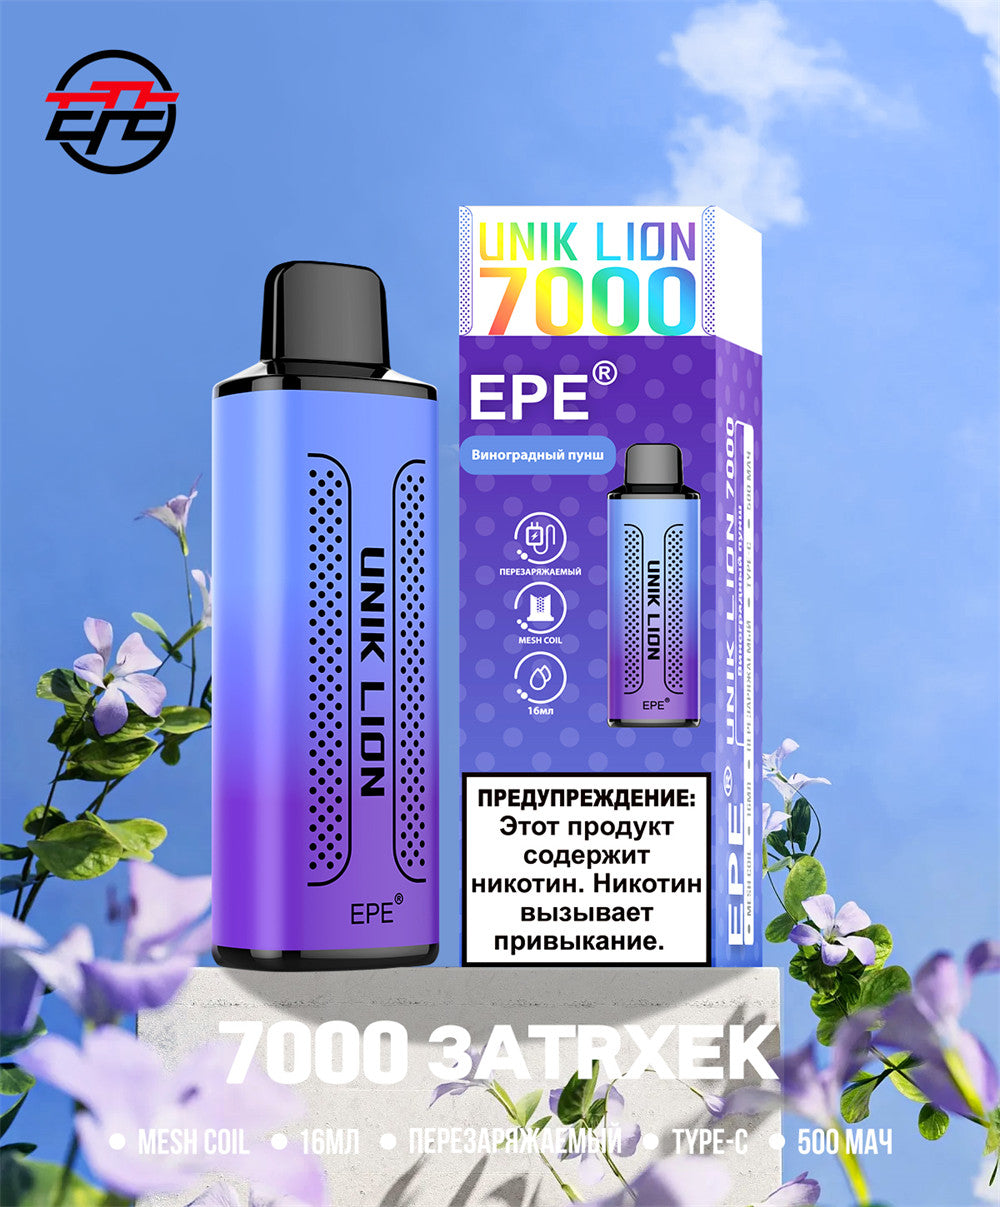 EPE UNIK LION  7000Puffs Disposable Vape Wholesale - Vapz Vape Wholesale